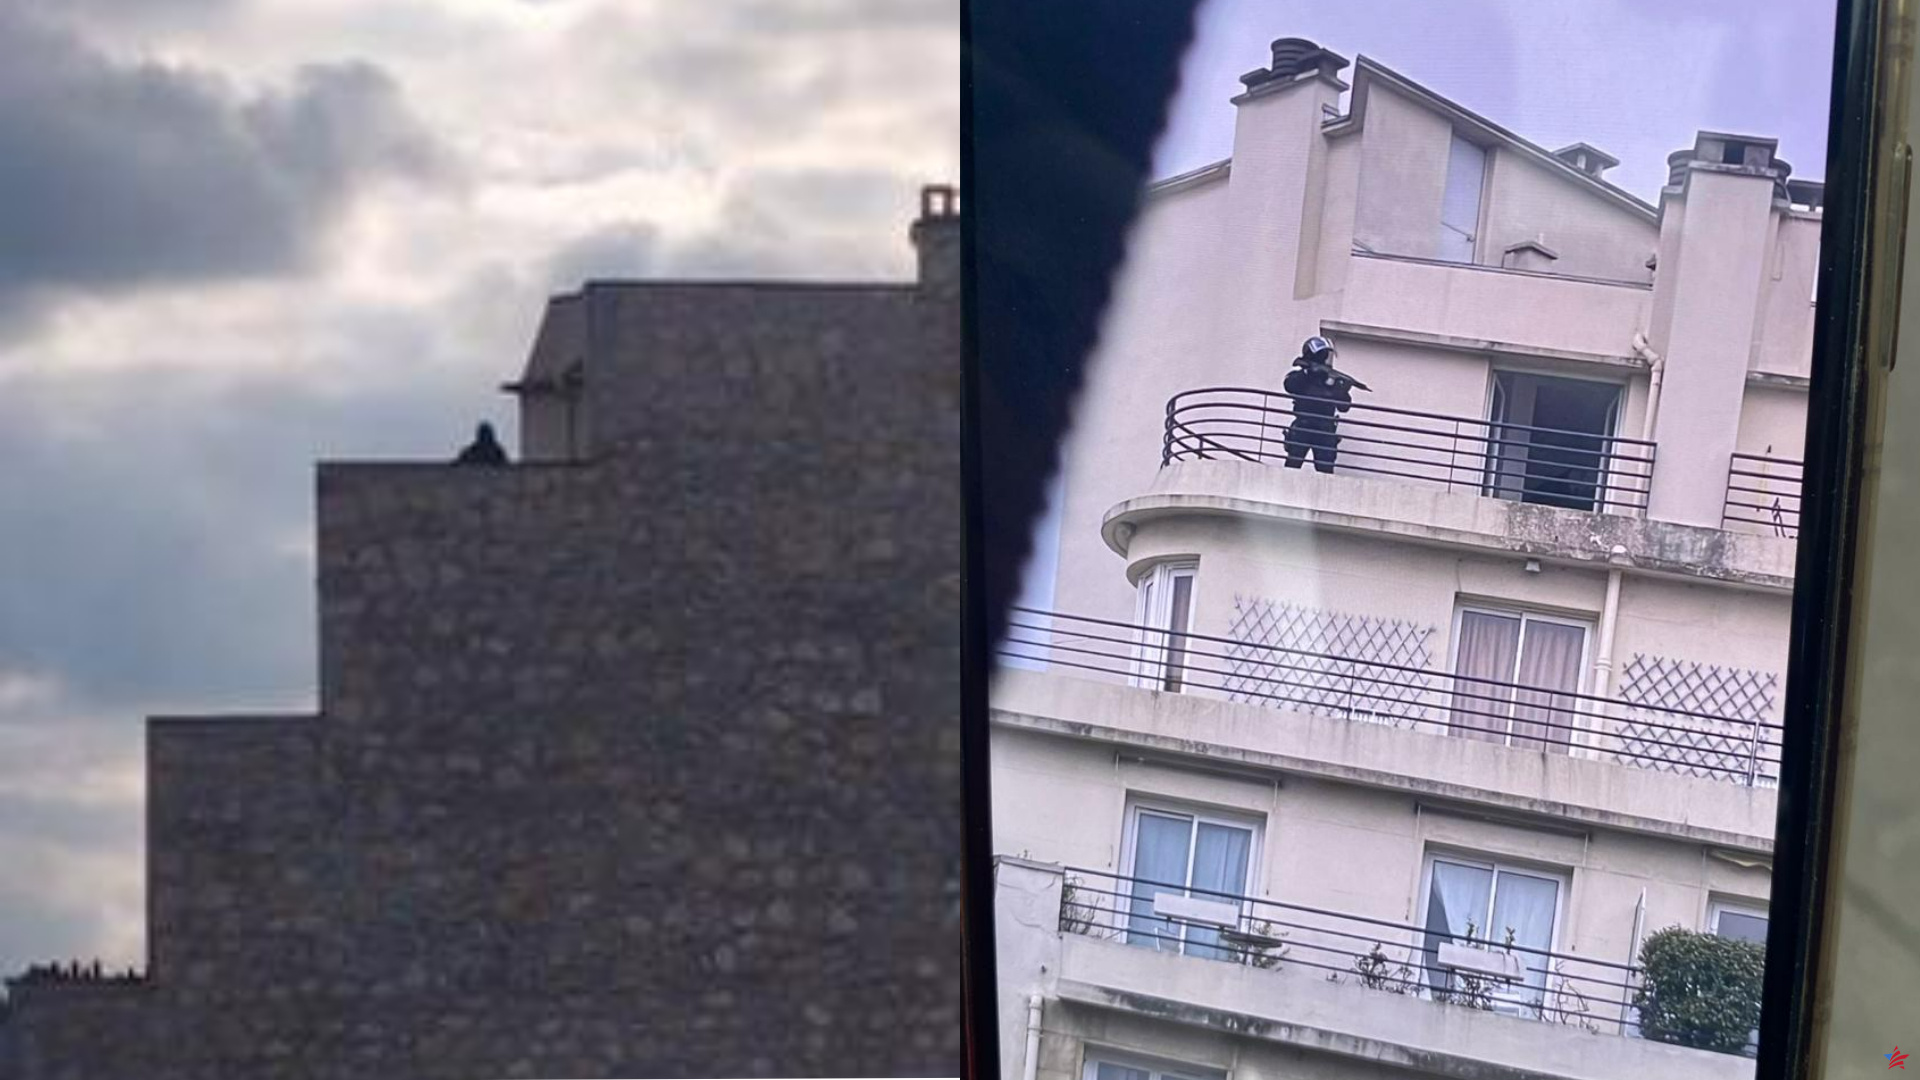 París: un hombre armado buscado en el distrito 16, confinado en el instituto Franklin